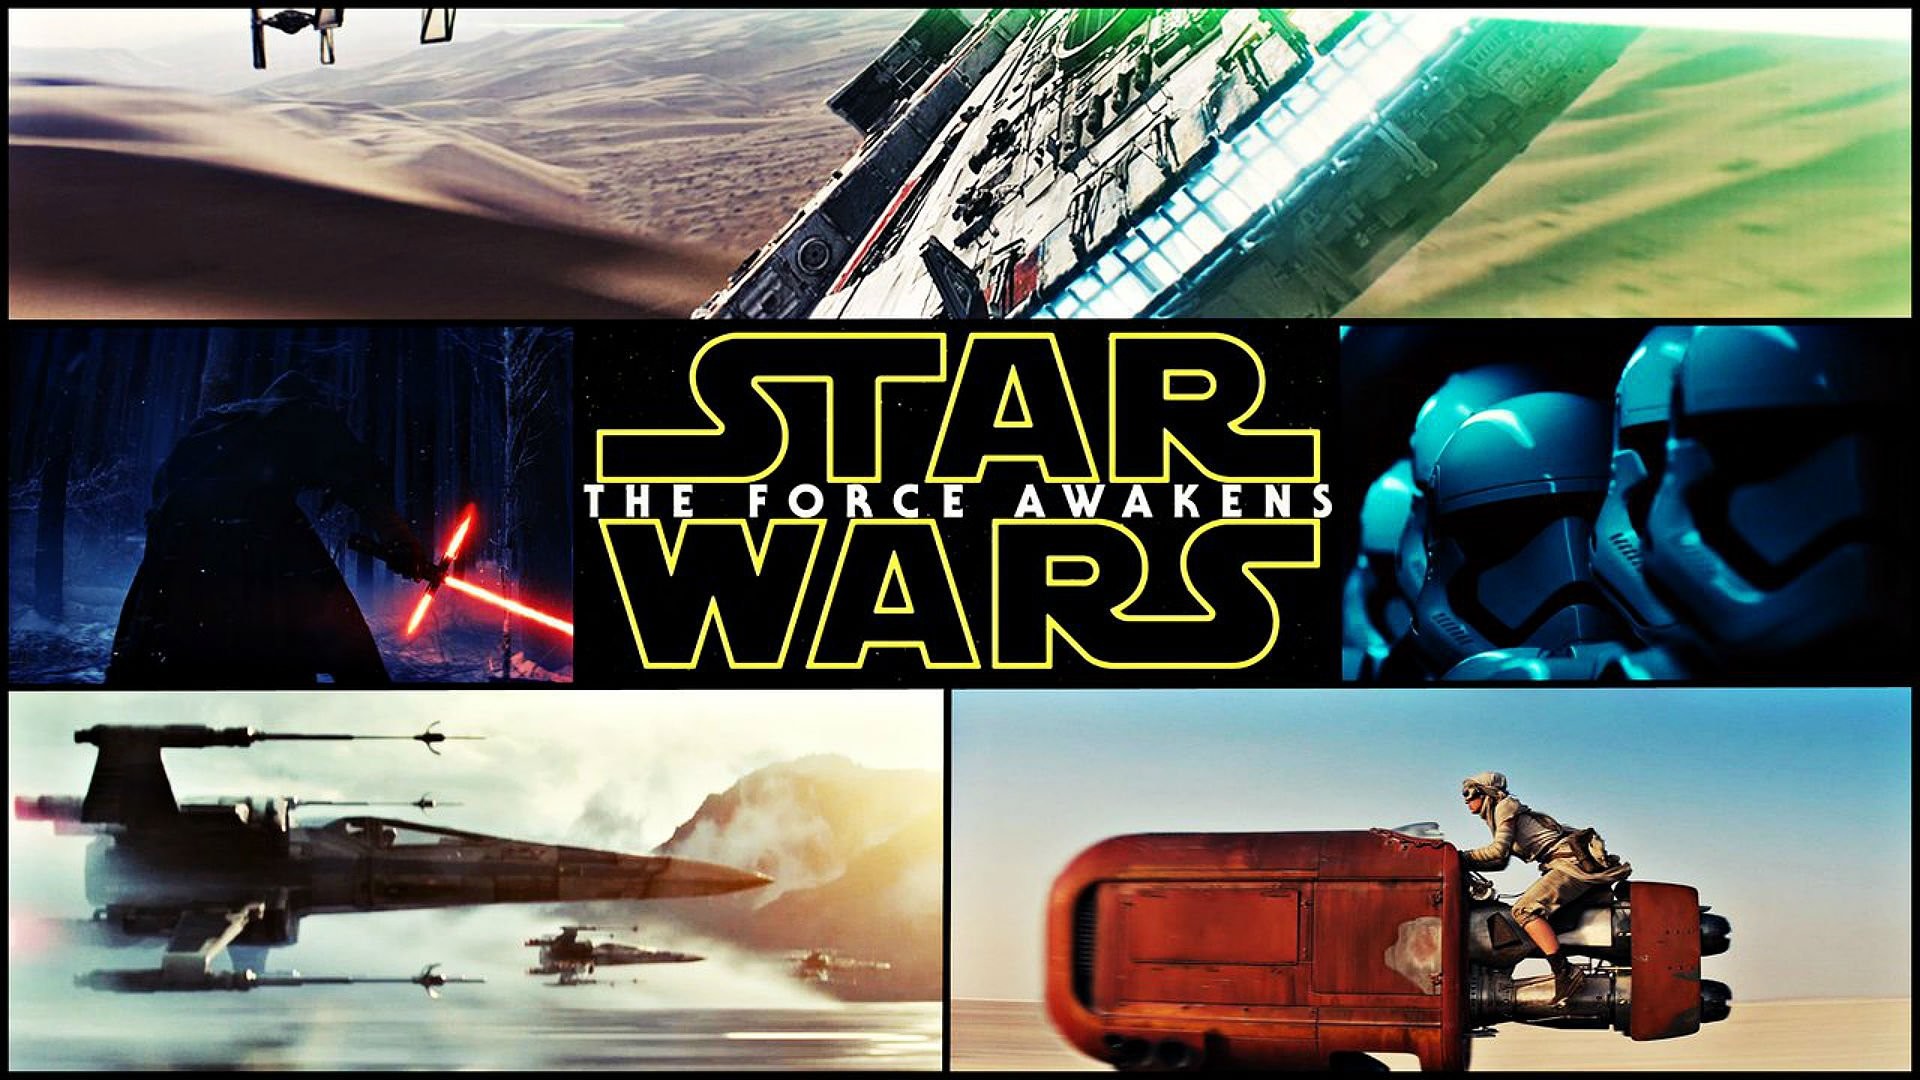 1920x1080 18 Star Wars: Episode VII - The Force Awakens Desktop Wallpapers | WPPSource